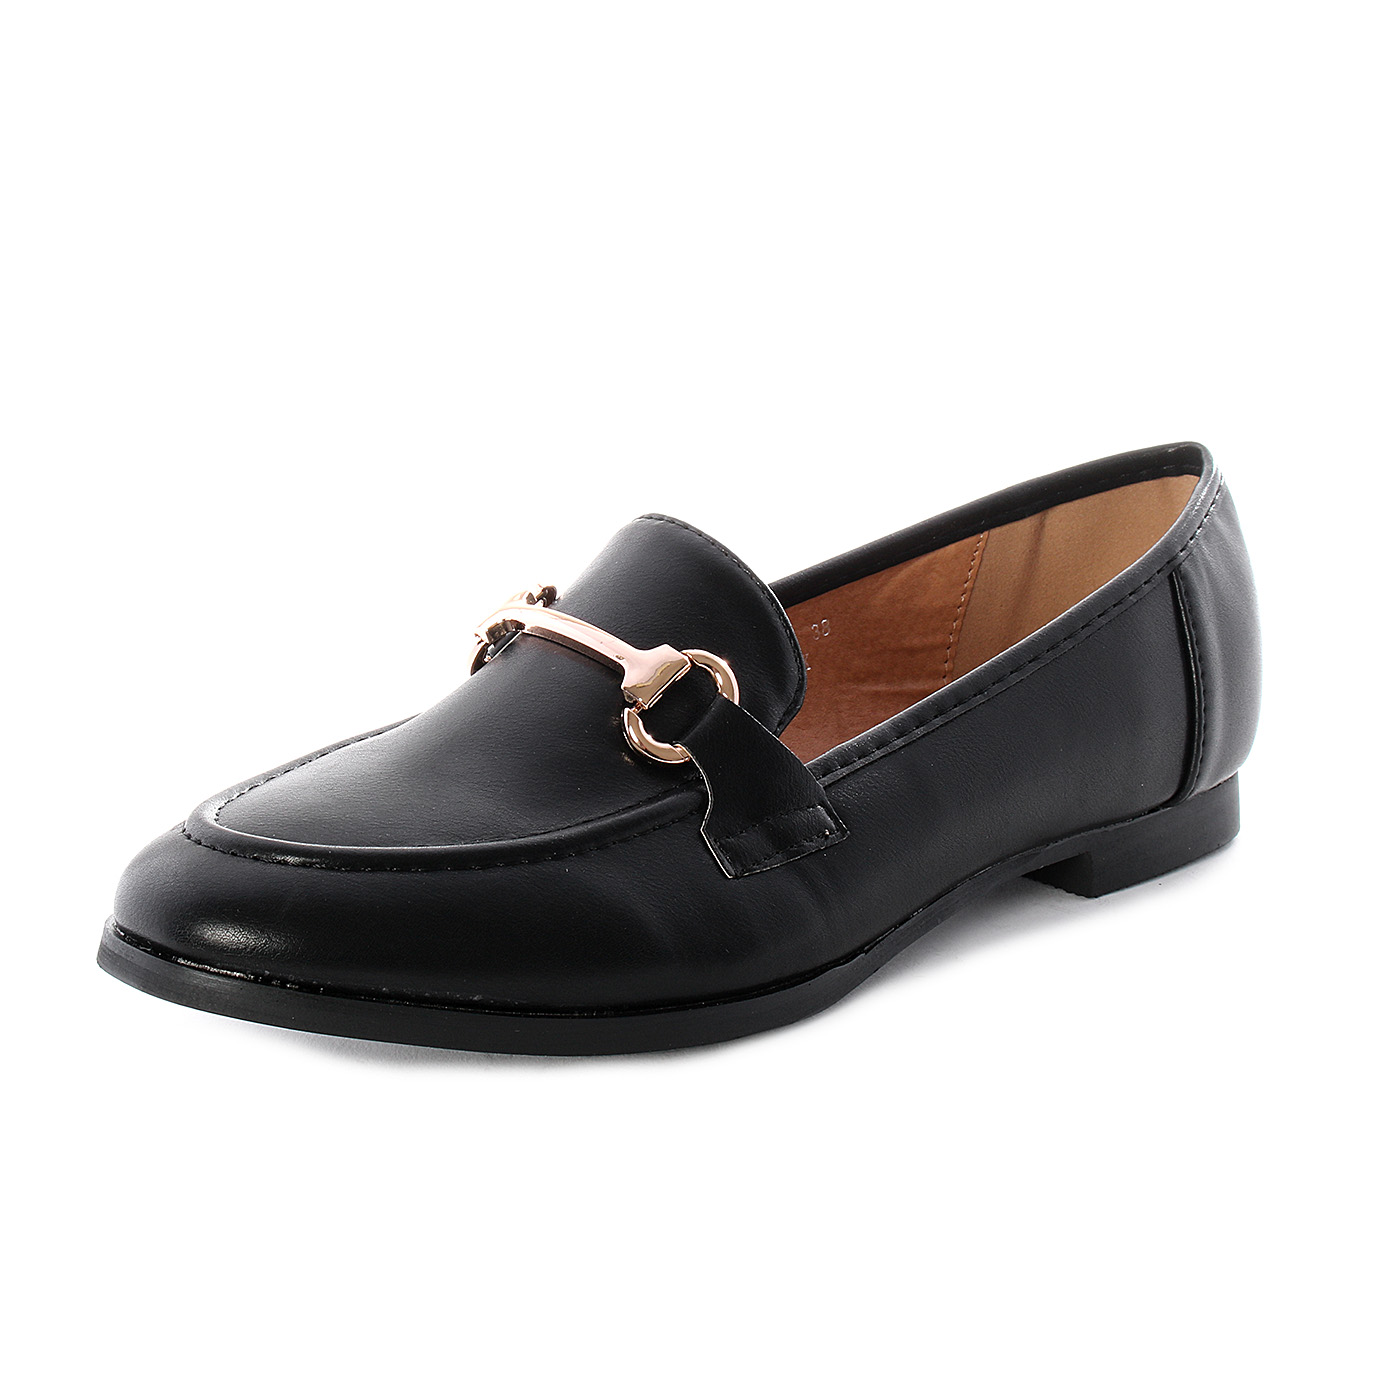 Sweet Shoes - Mocassini da donna in similpelle con morsetto - Marrone, Nero  - MitShopping - Abbigliamento e scarpe